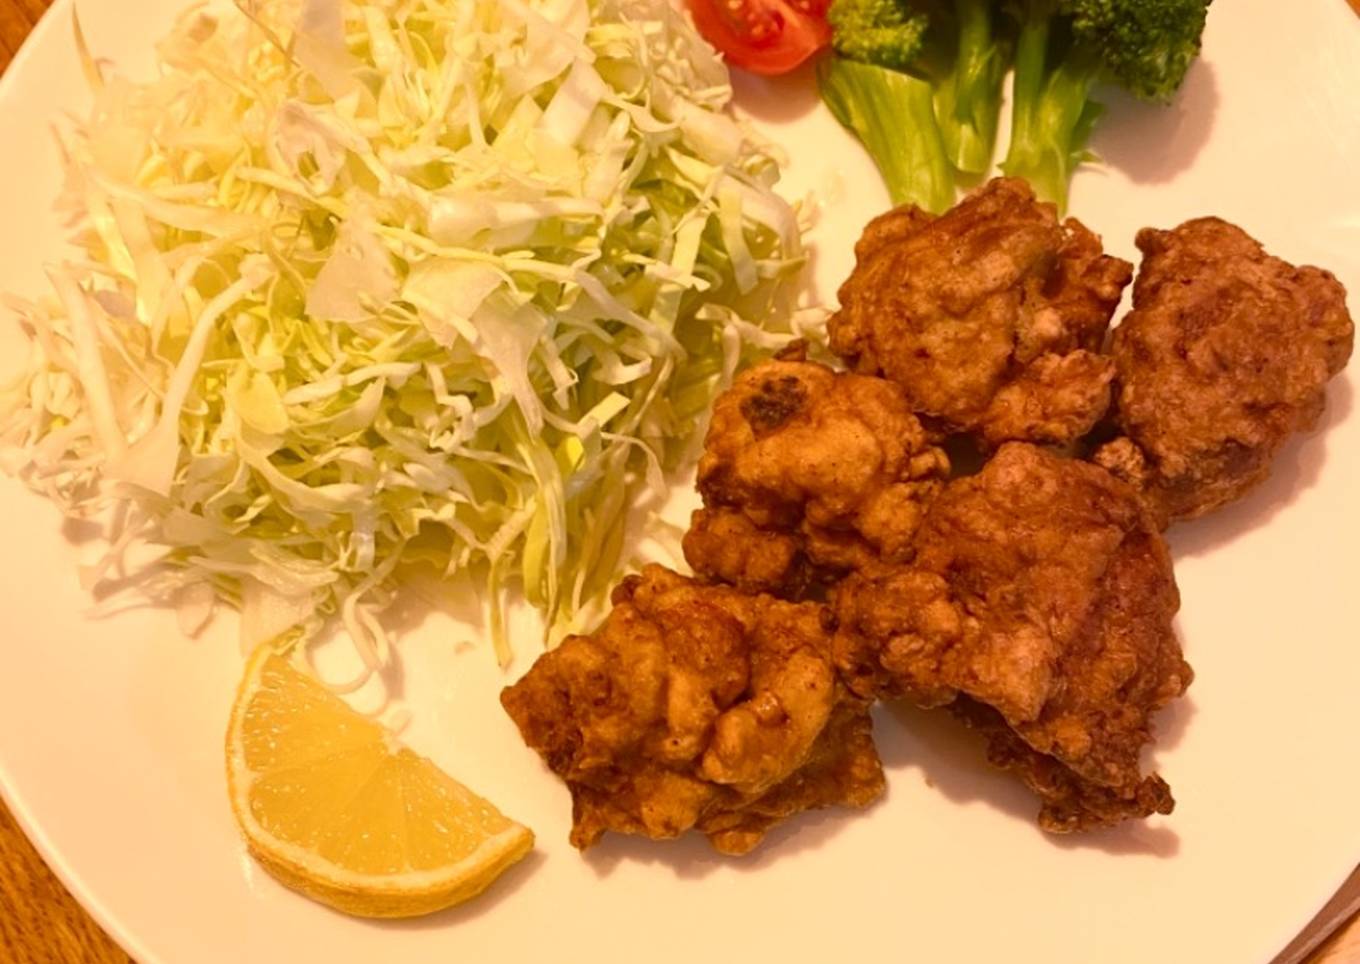 My Japanese Fried Chicken “Kara-age”